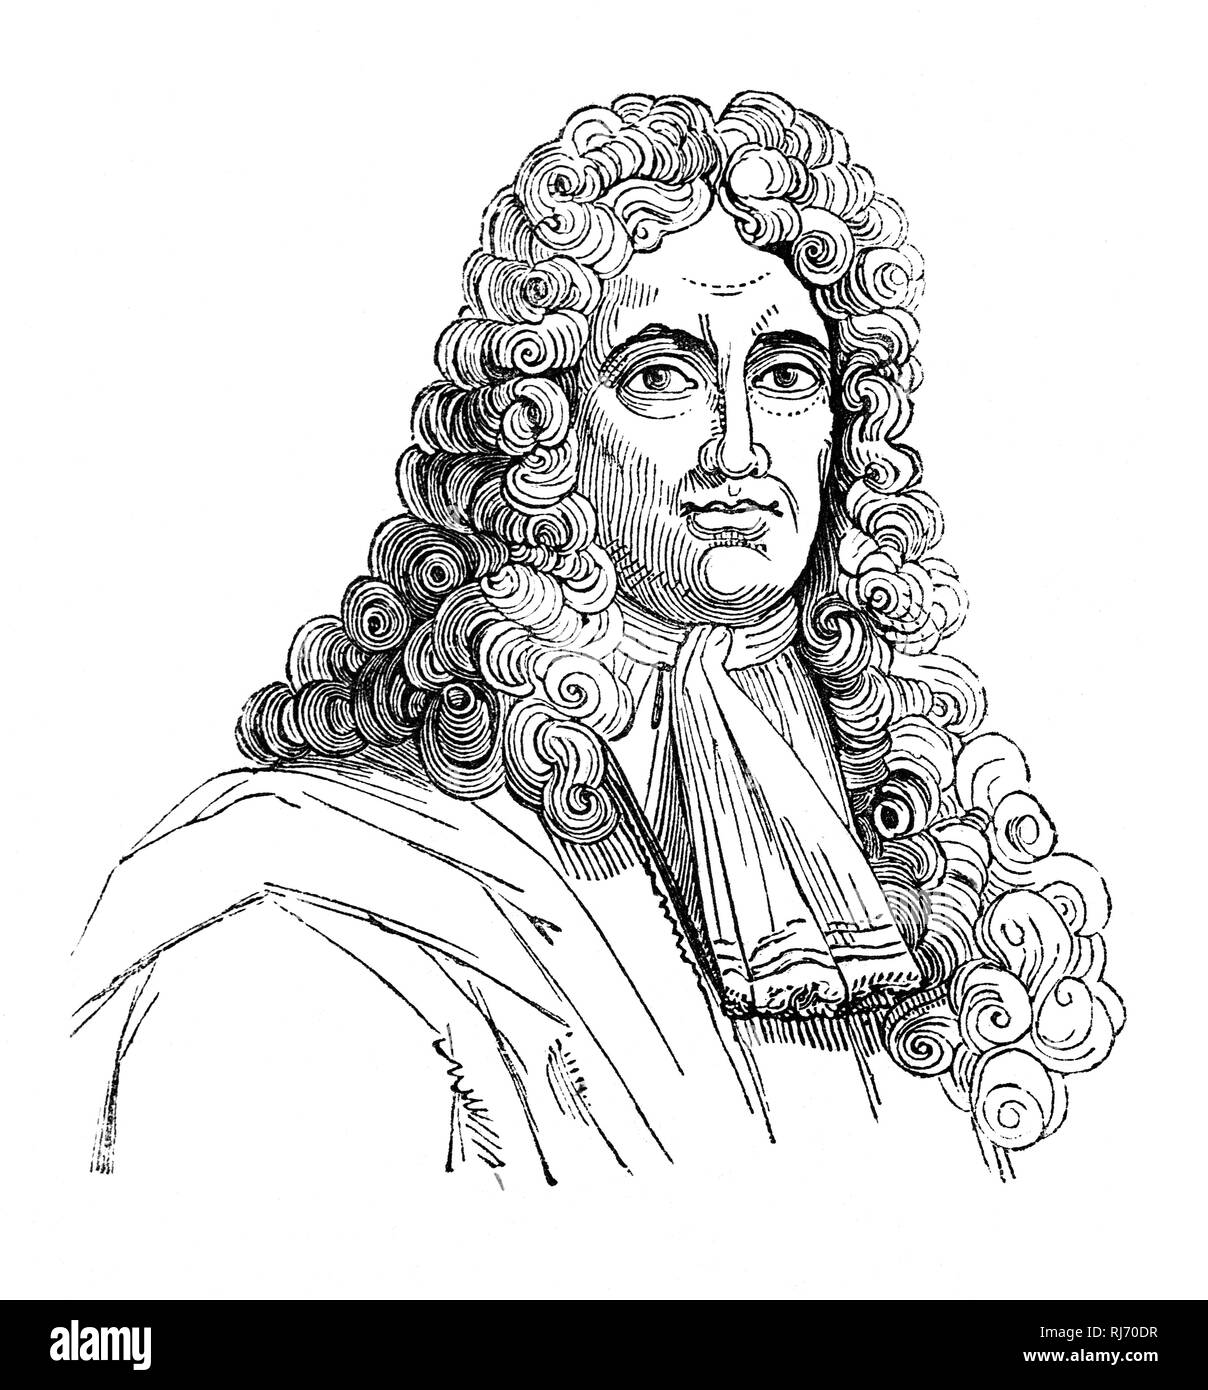 John Dunton (1659-1733) était un libraire anglais et l'auteur. En 1691, il a fondé la société athénienne de publier l'athénien du mercure, le premier grand périodique populaire et divers premier périodique en Angleterre. En 1693, pendant quatre semaines, la société athénienne publié également le Ladies' Mercure, le premier périodique publié qui a été spécifiquement conçue tout spécialement pour les femmes. Banque D'Images